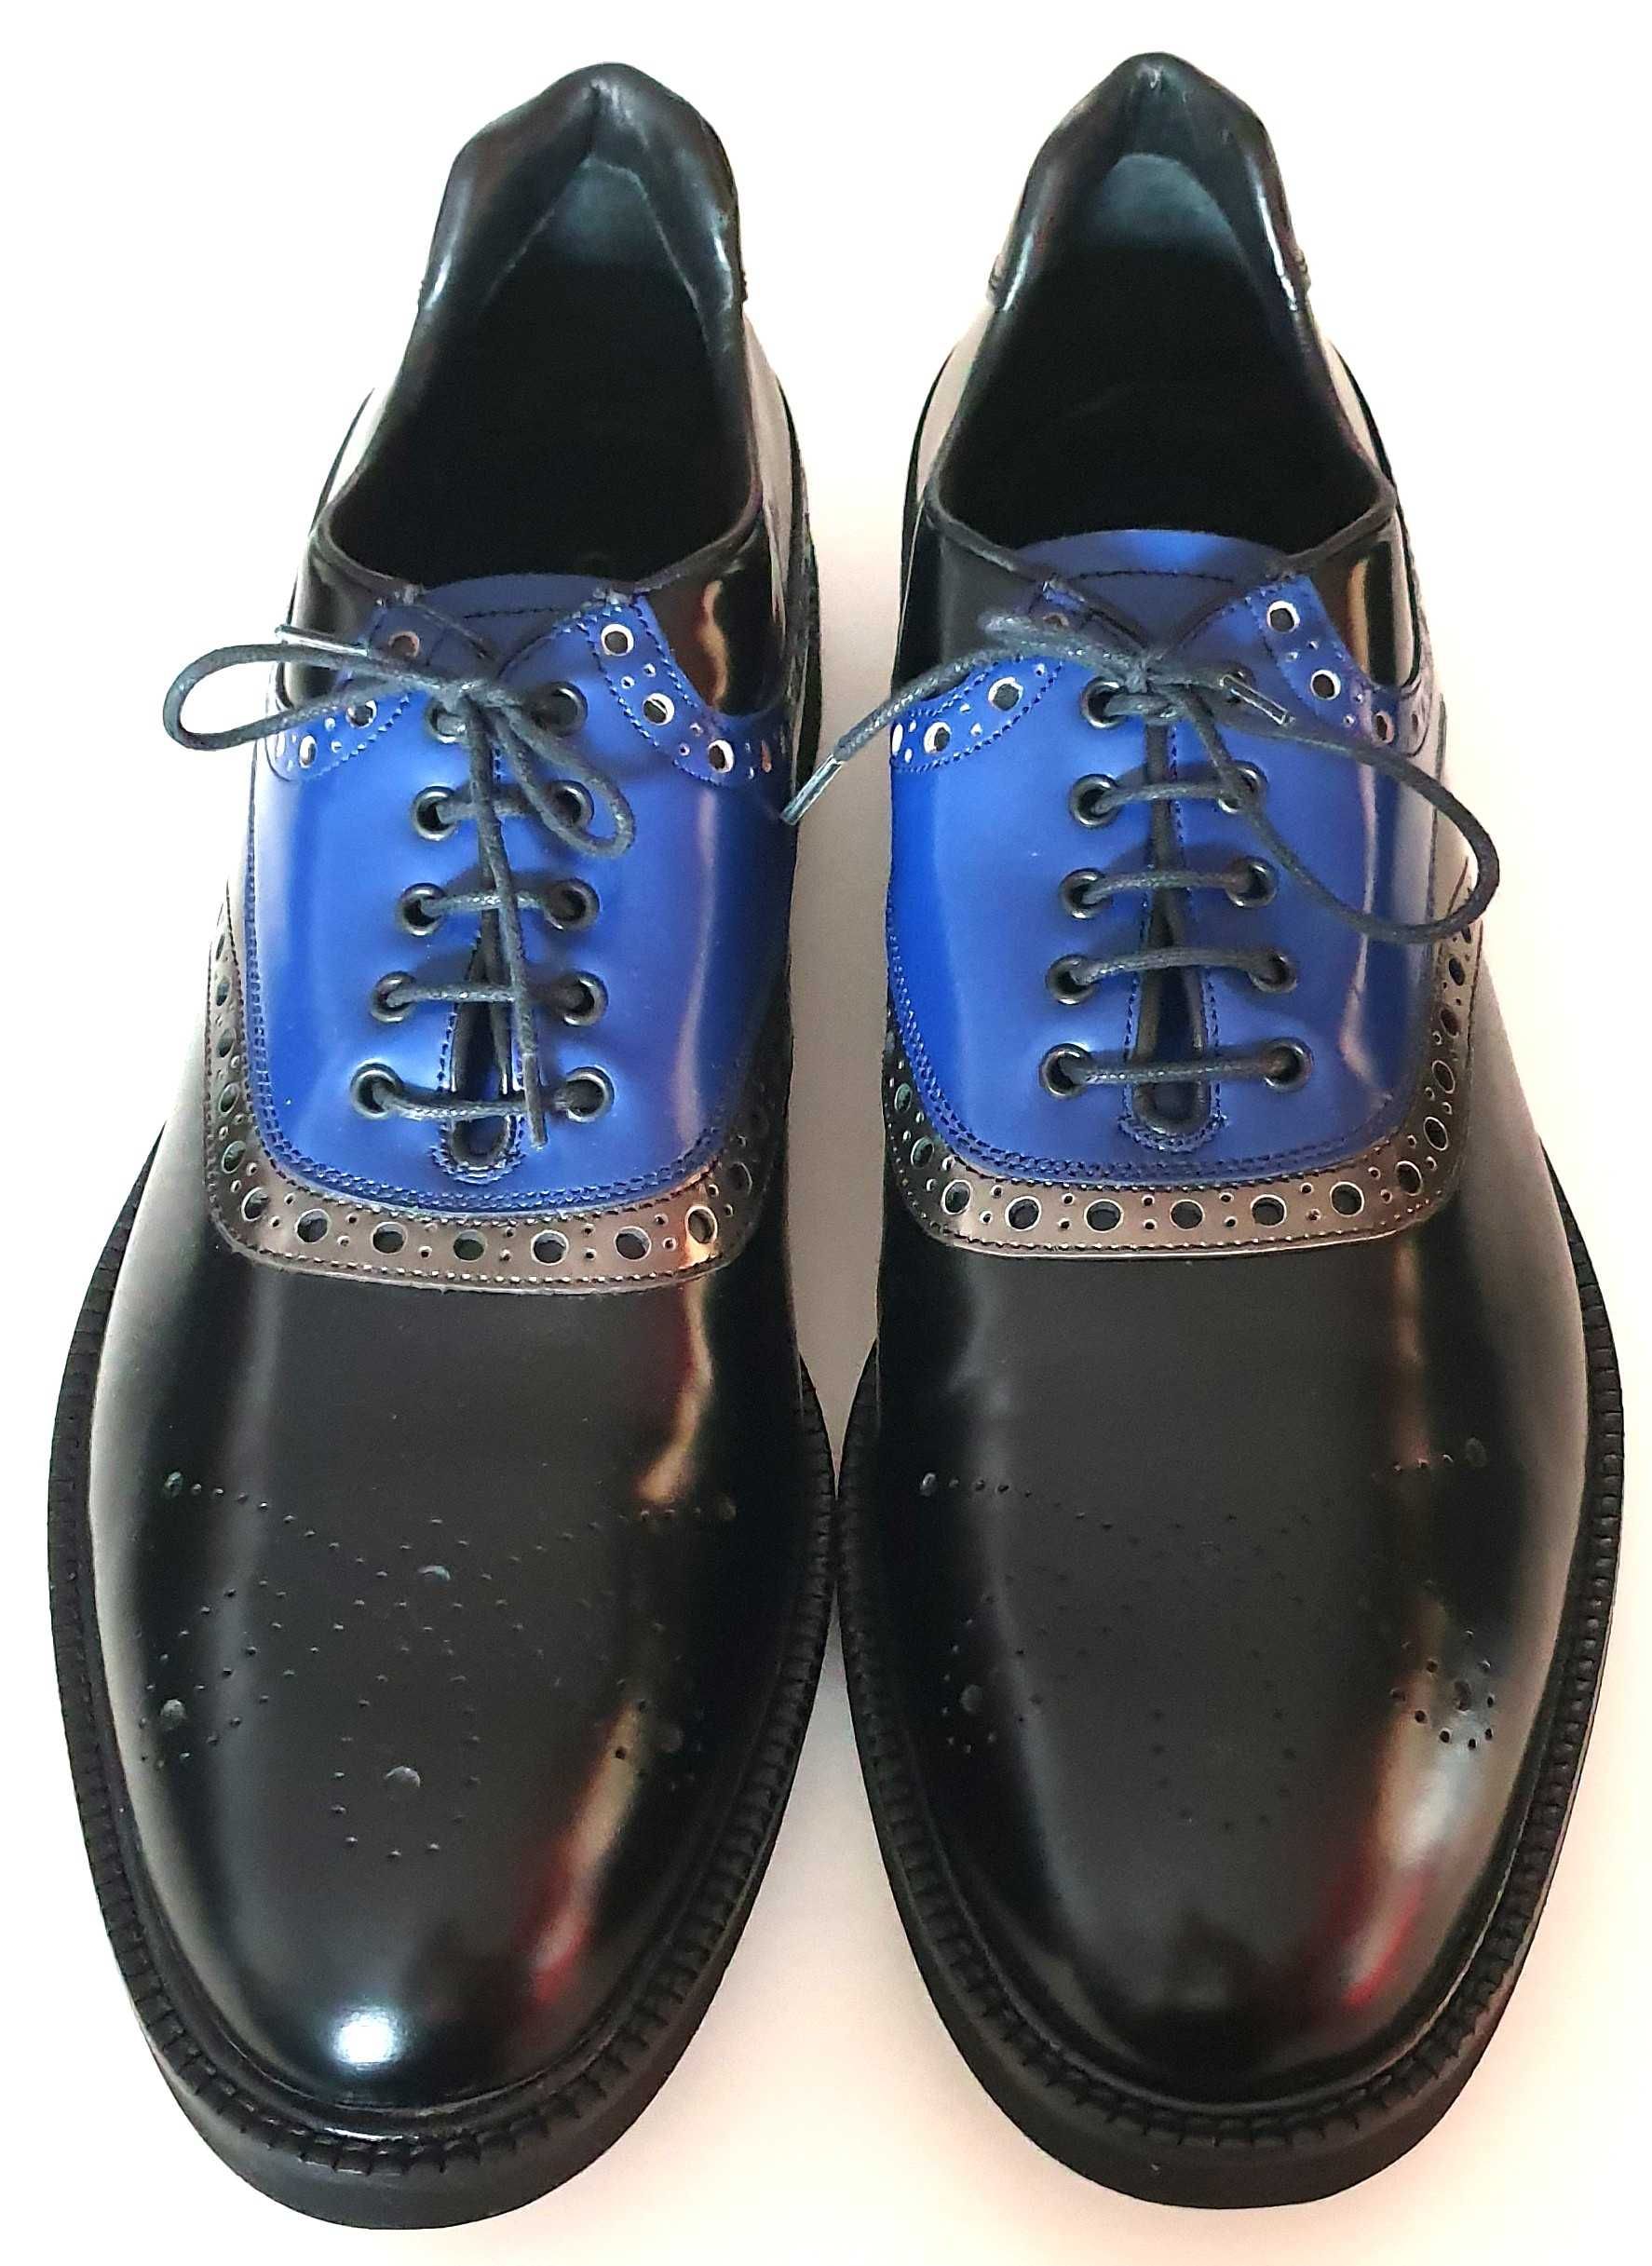 Pantofi Barbati 43 - Negru, Albastru, Argintiu Piele Siret Gino Rossi